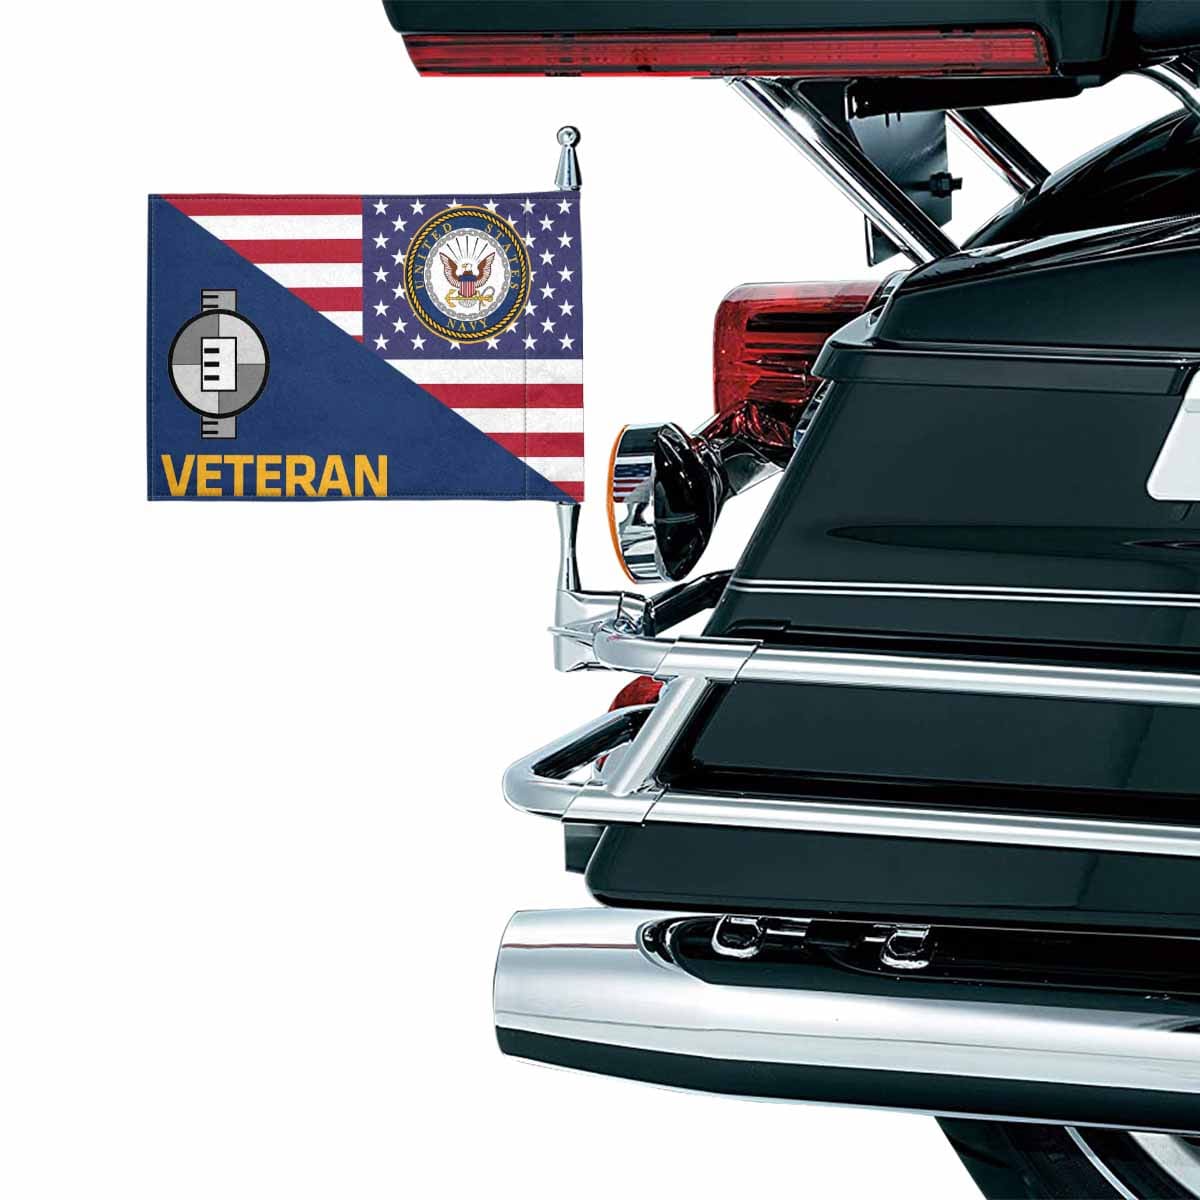 US Navy Engineering Aide Navy EA Veteran Motorcycle Flag 9" x 6" Twin-Side Printing D01-MotorcycleFlag-Navy-Veterans Nation